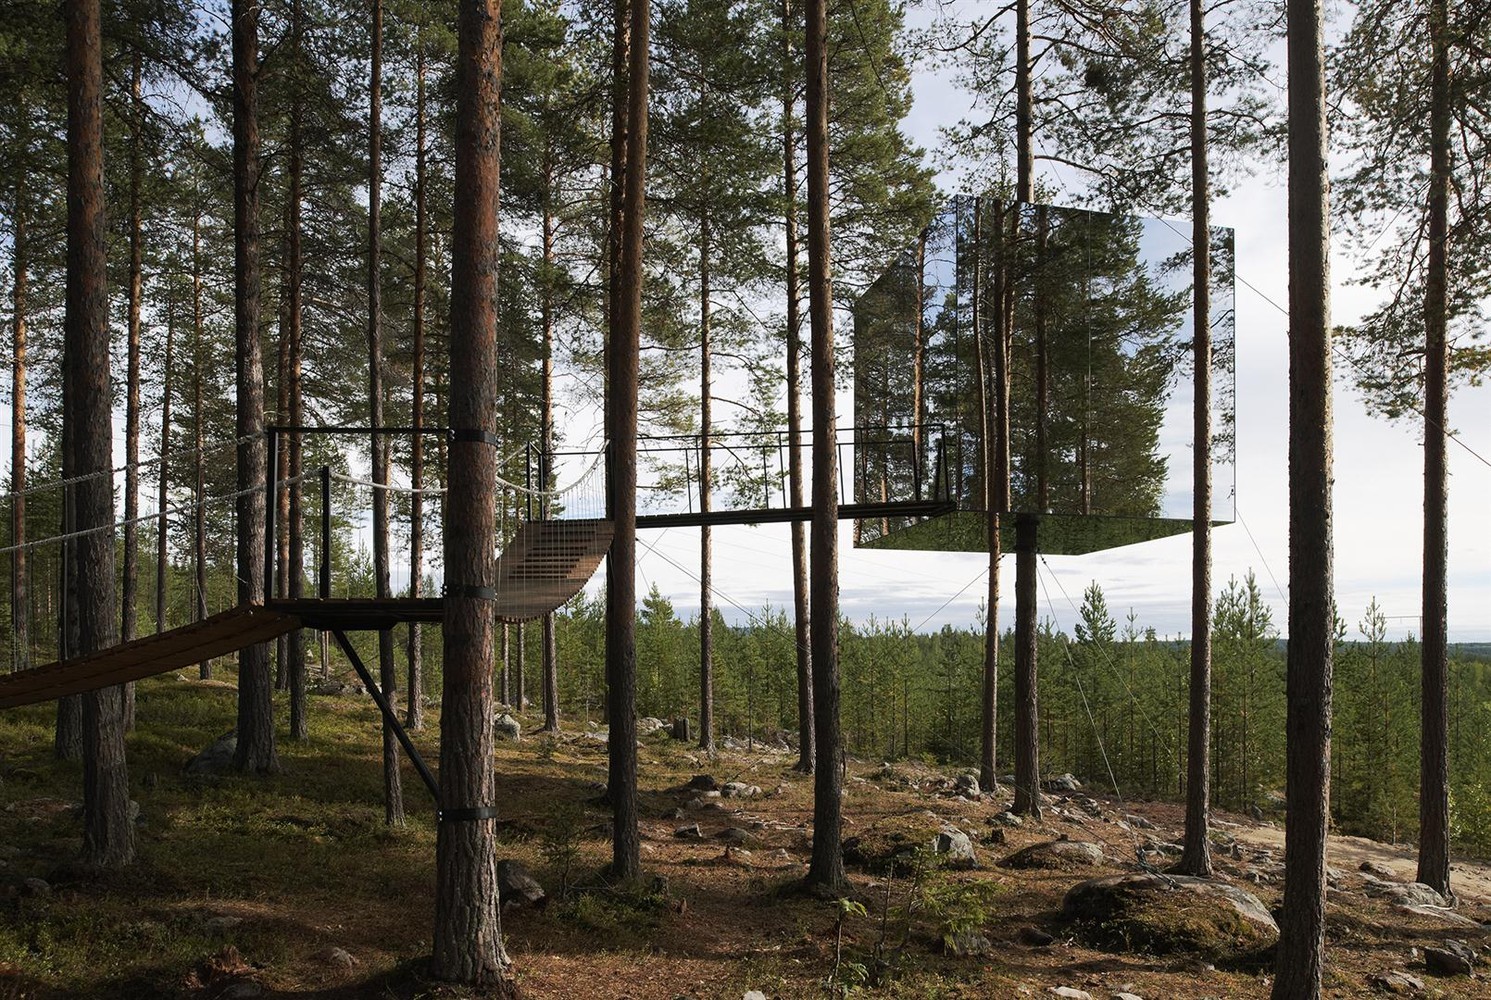 Tree Hotel / Tham & Videgård Arkitekter